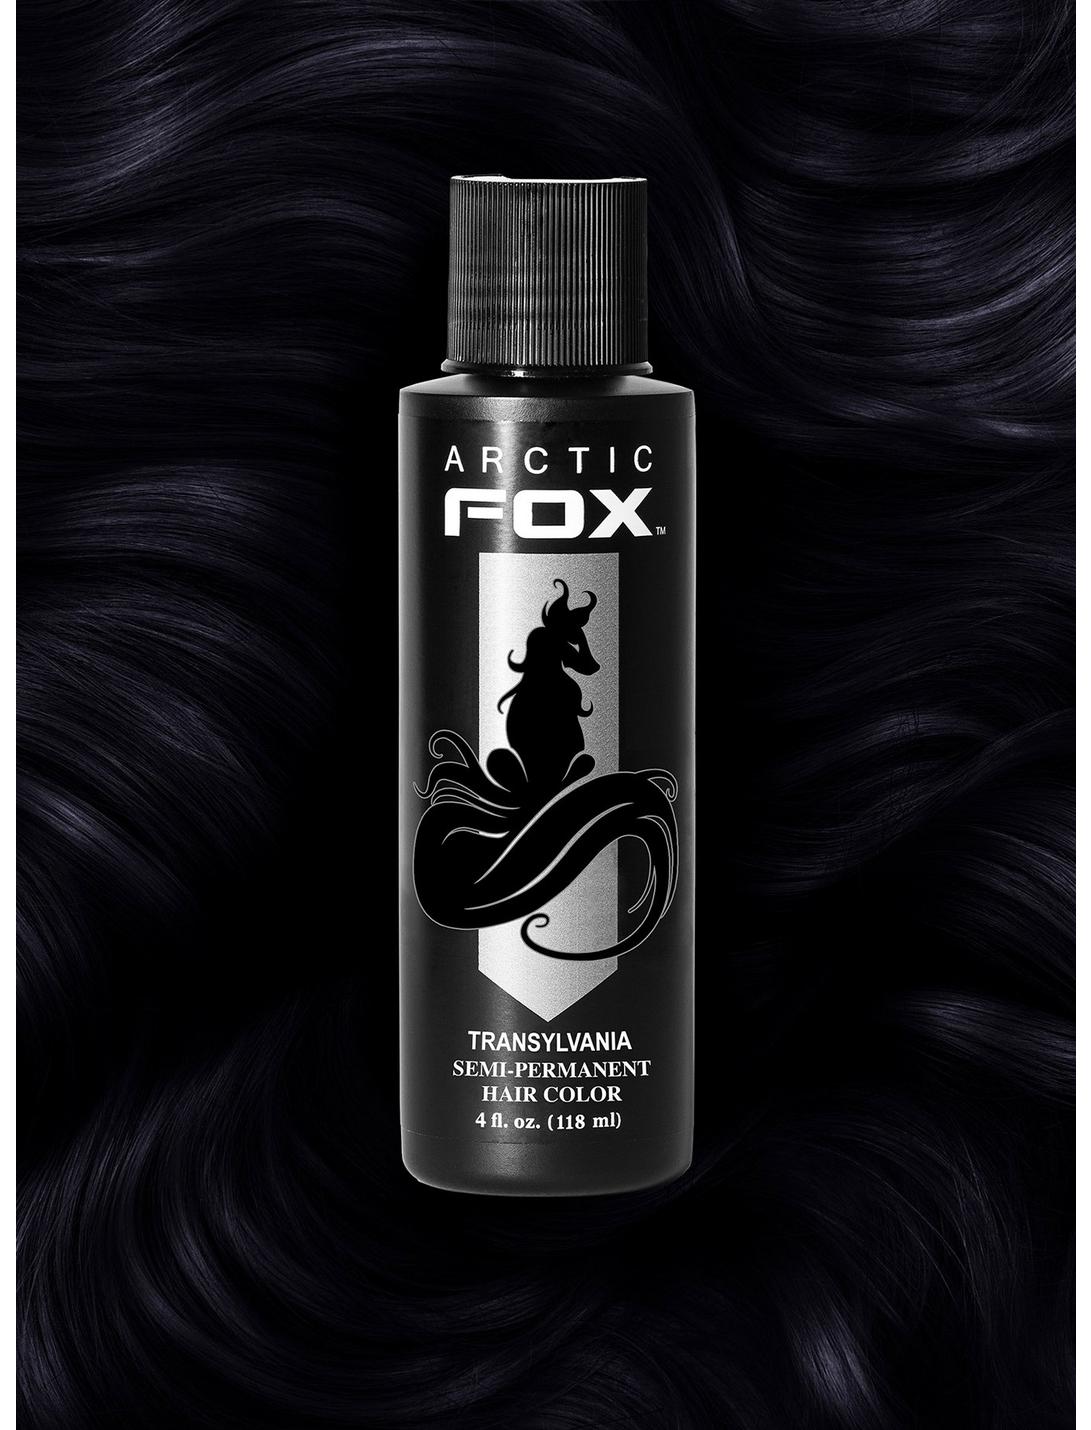 Arctic Fox Semi-Permanent Transylvania Black Hair Dye | Hot Topic